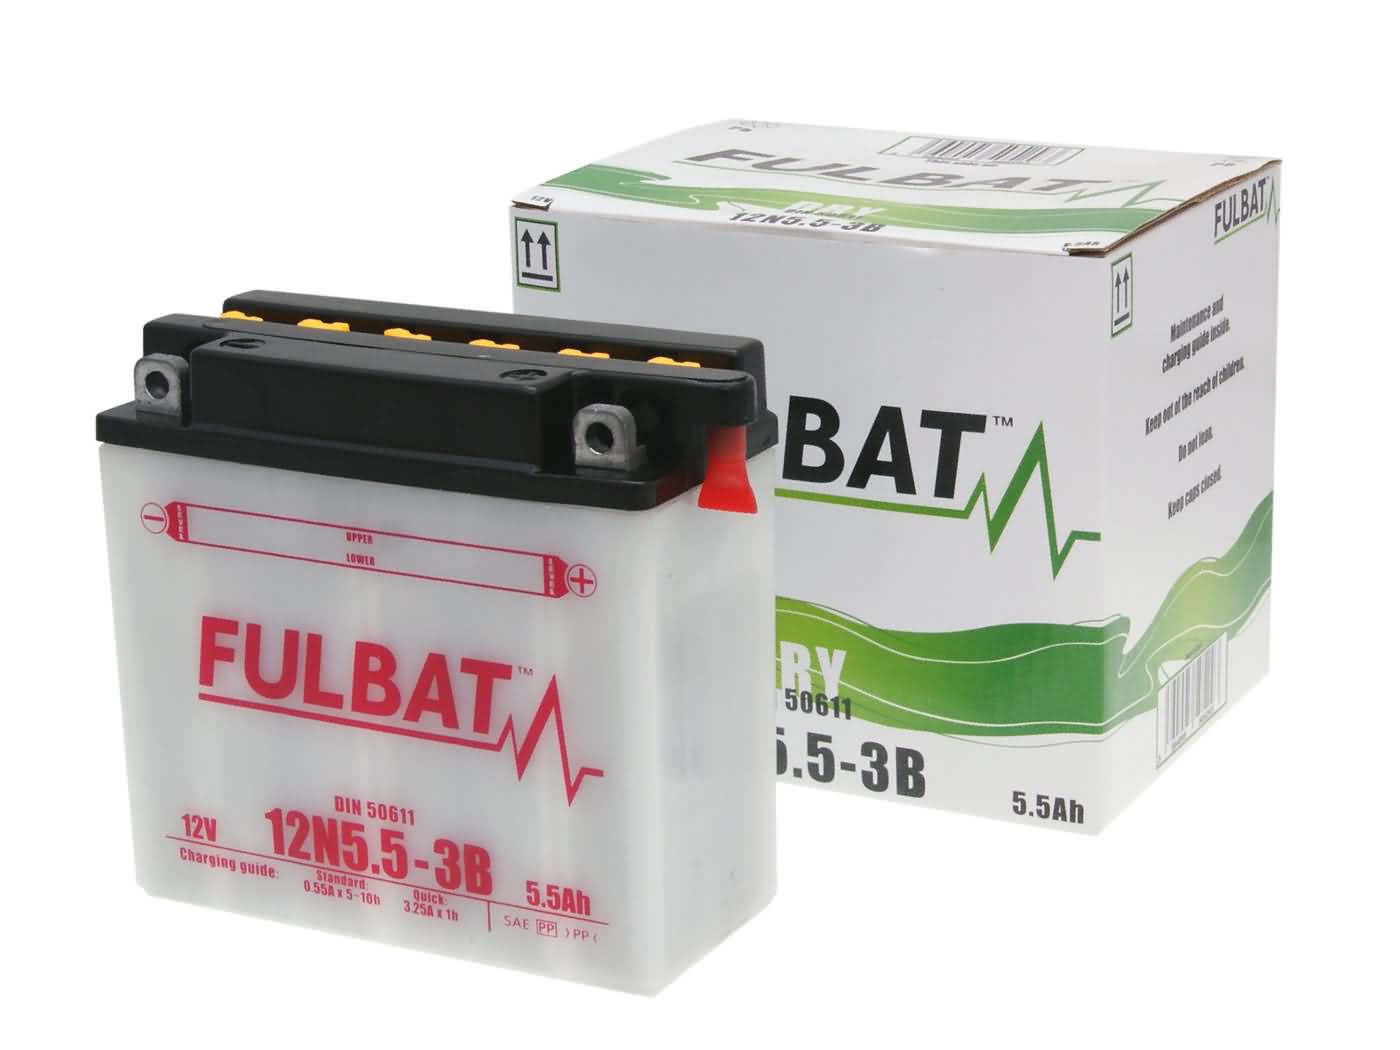 Fulbat 12N5,5-3B DRY Batterie